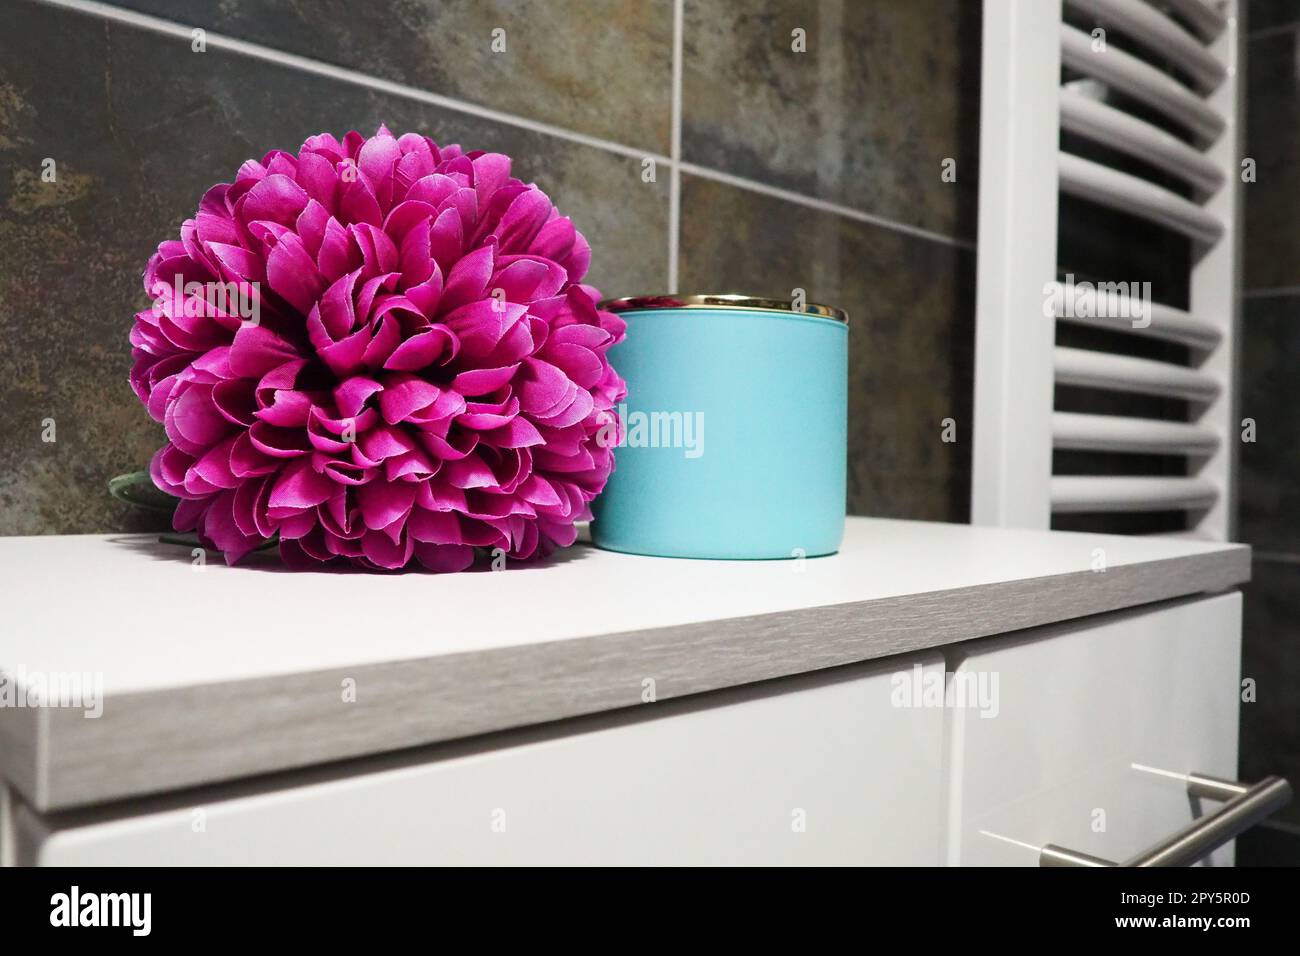 Elementi decorativi del bagno. Un barattolo blu di crema e un doppio fiore artificiale rosa brillante su un ripiano del mobile. Piastrelle nere. Bagno e WC interno. Scaldasalviette per radiatore sulla parete. Foto Stock